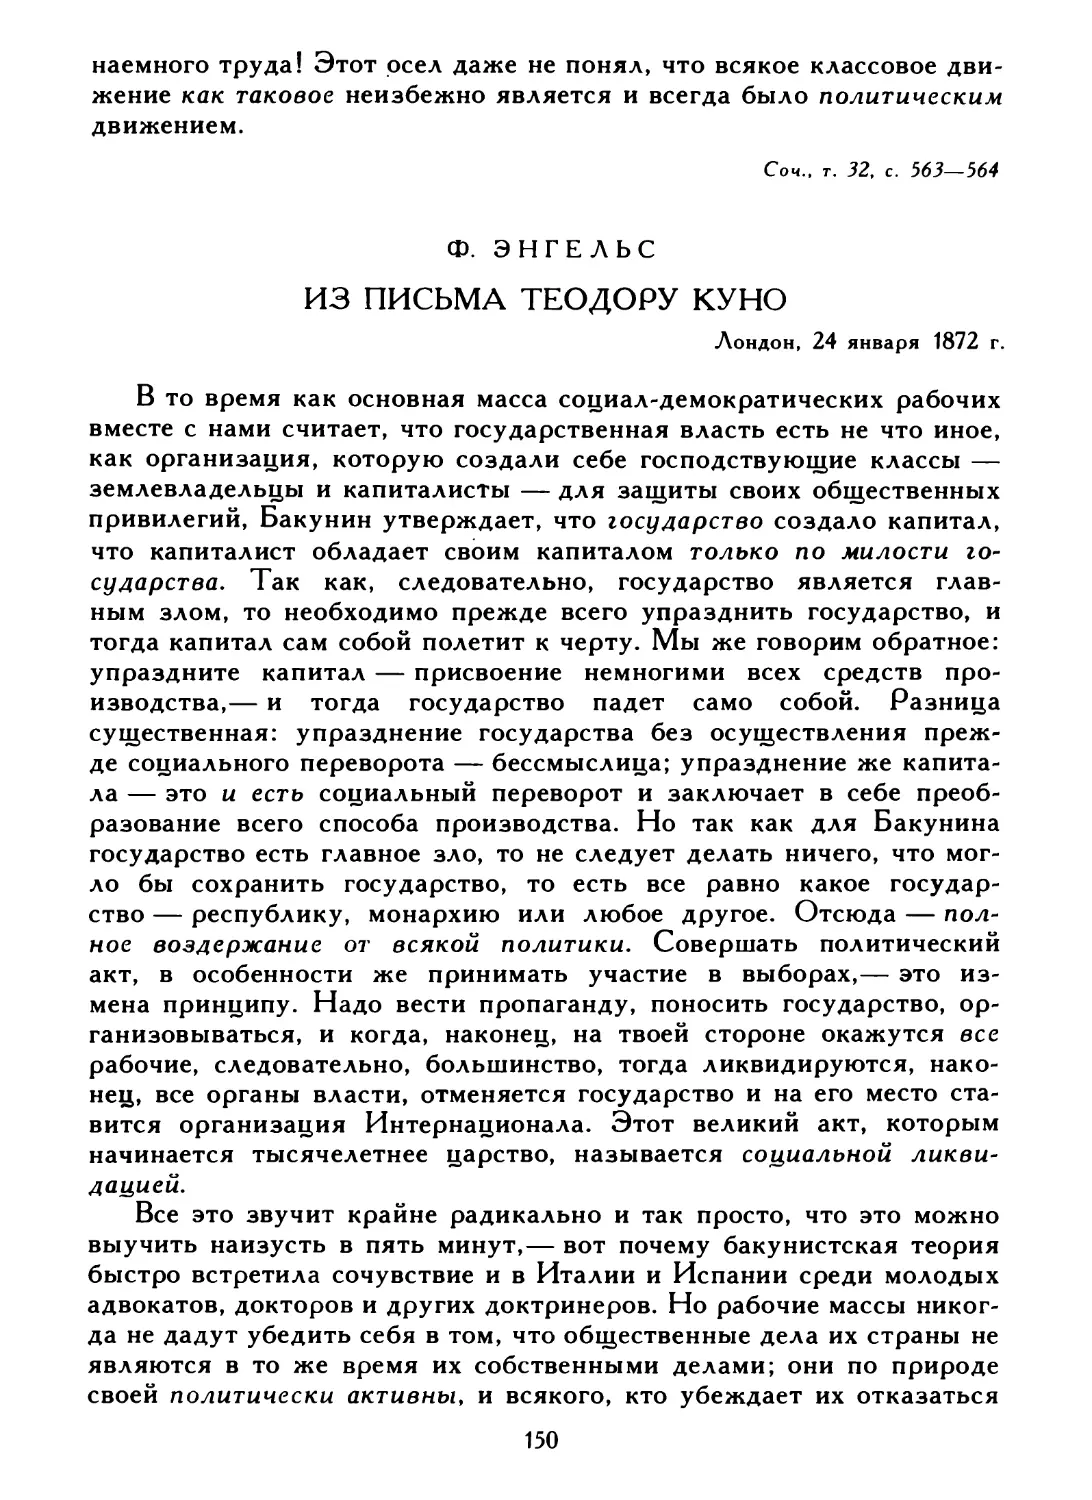 Ф. Энгельс. Из письма Теодору Куно, 24 января 1872 г.